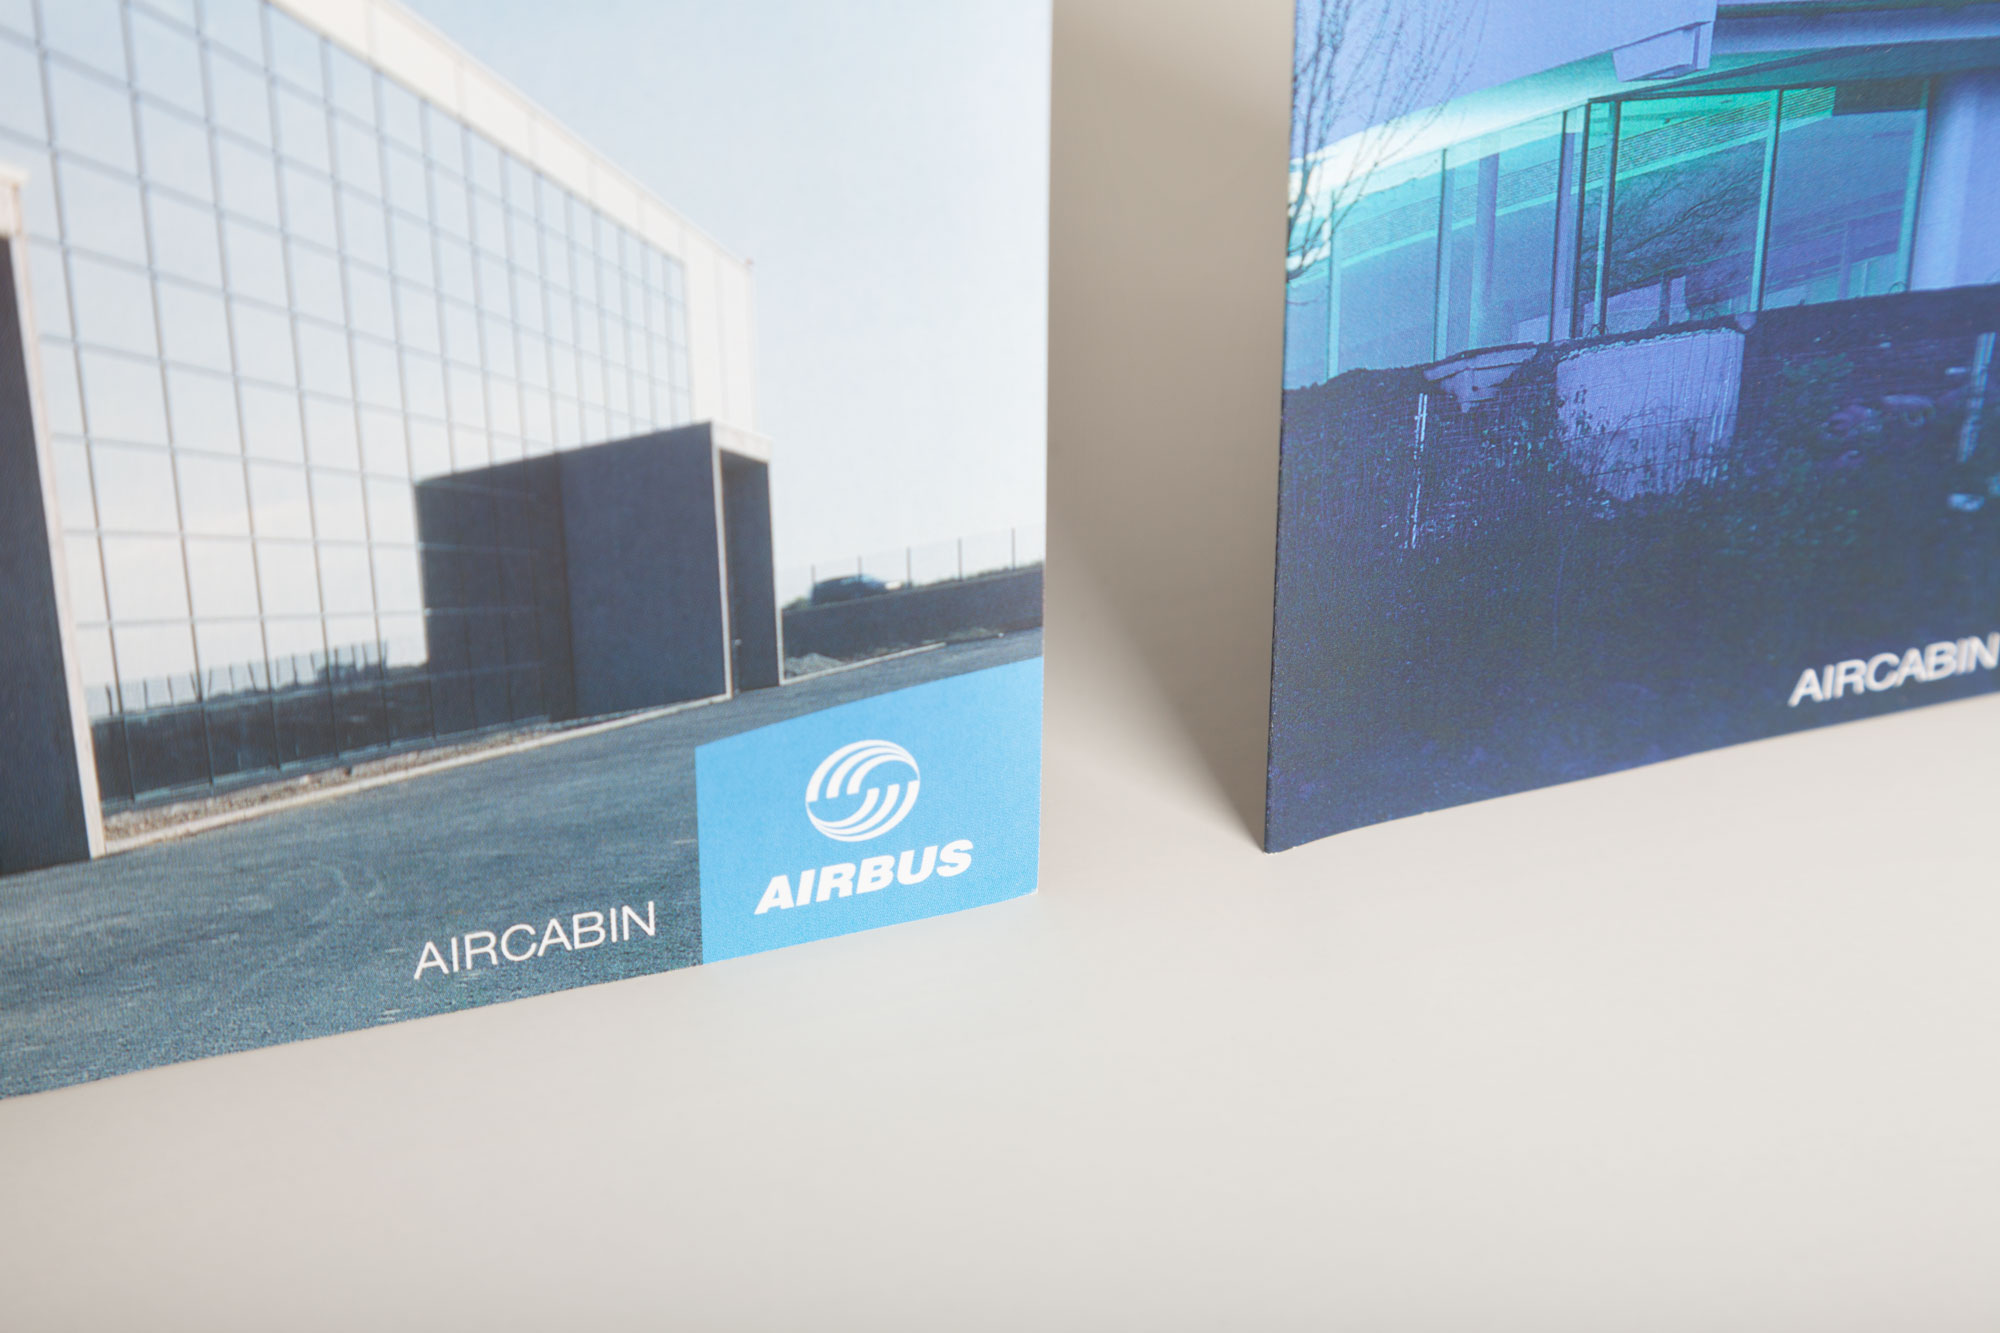 75a gestaltet verschiedene Flyer für Airbus Aircabin Deutschland